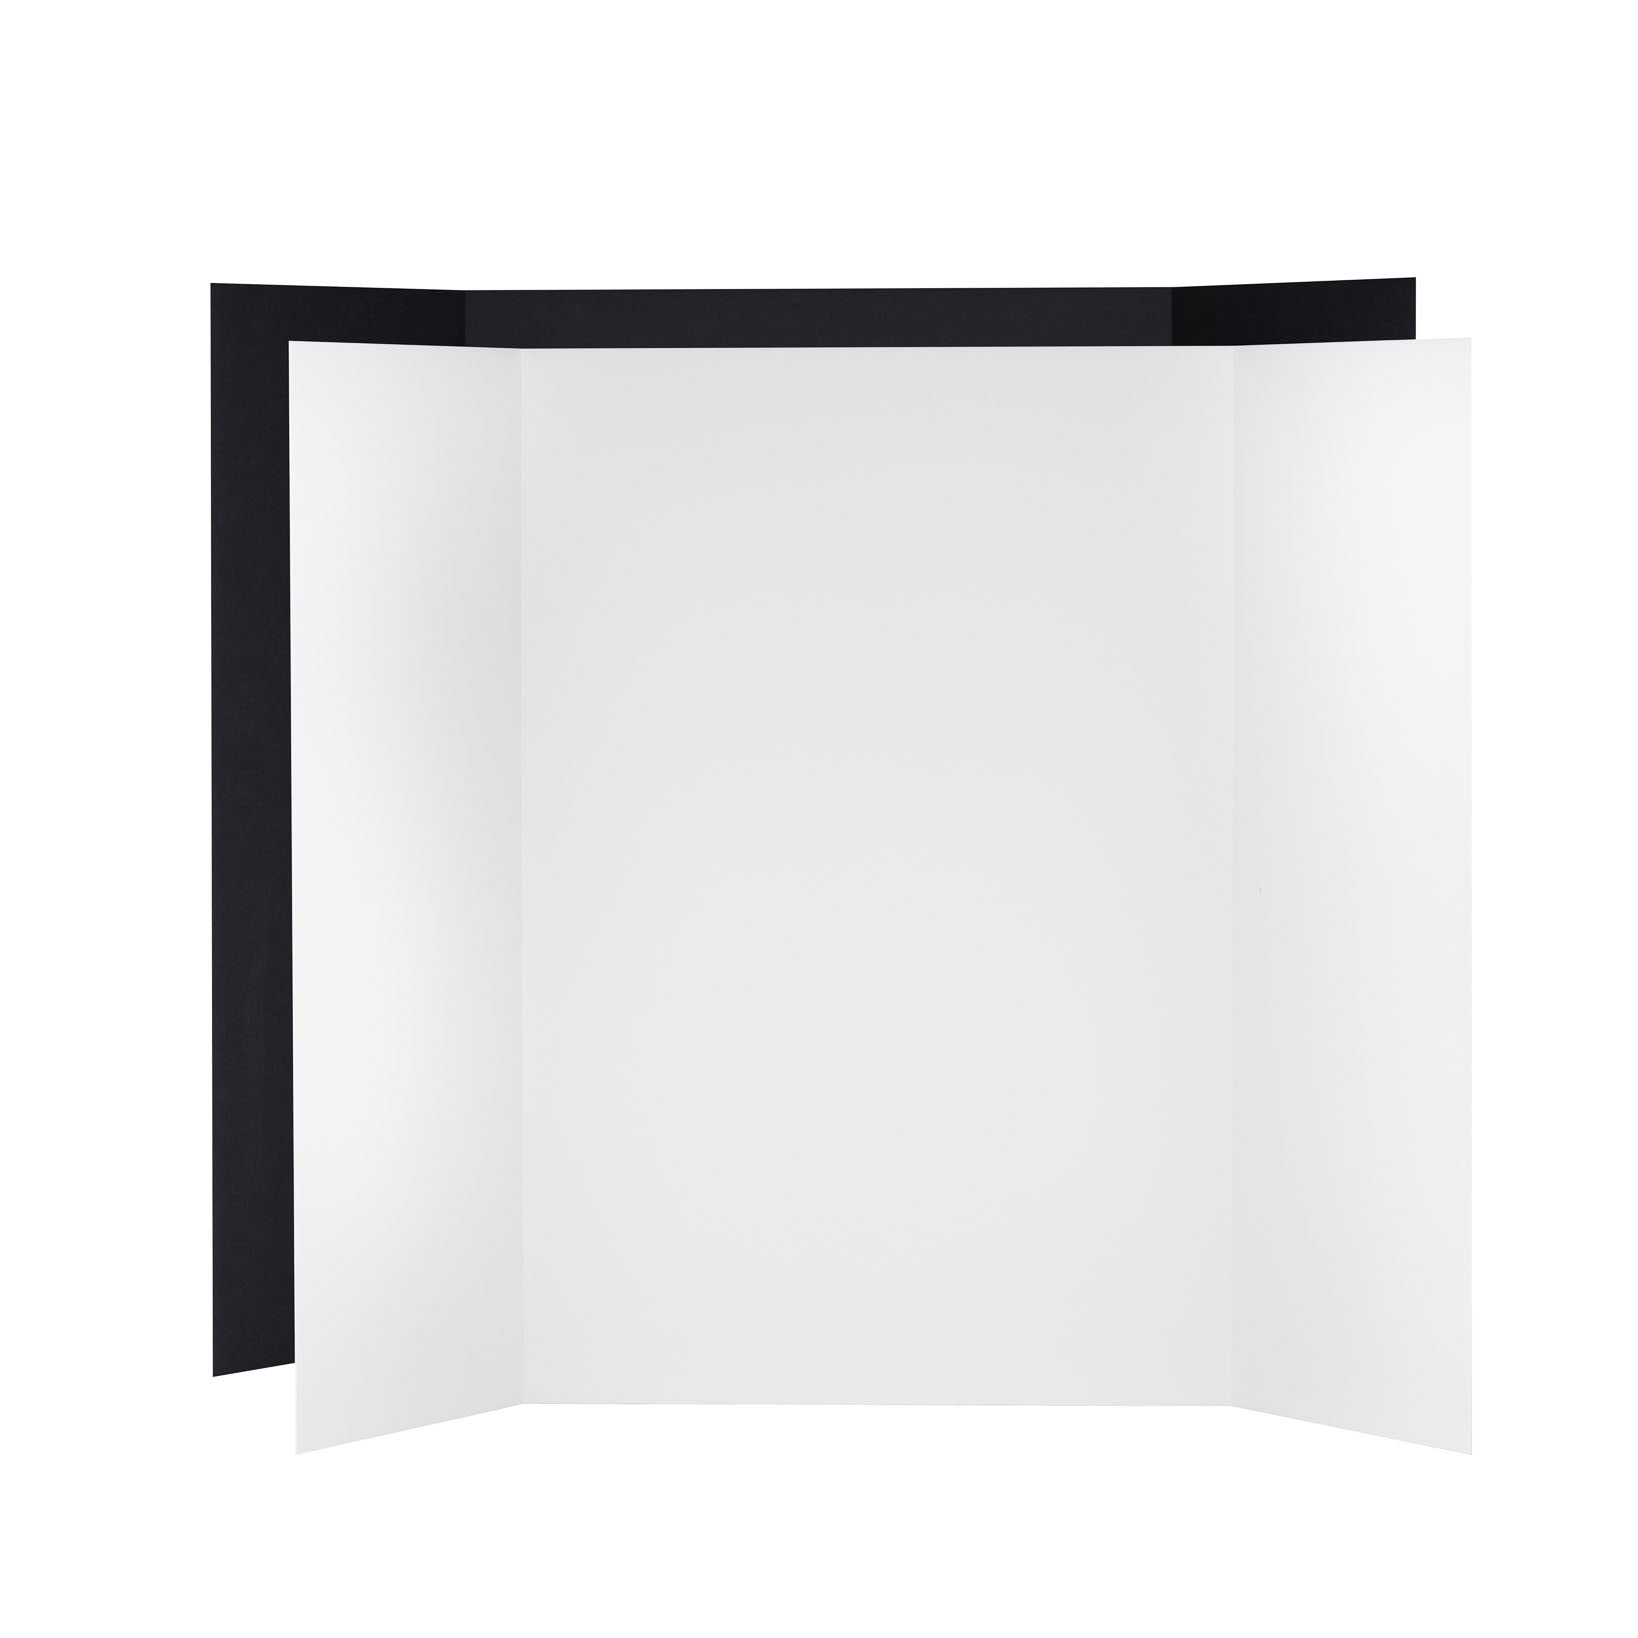 V-Flat World Tabletop V-Flat Large (3'x4'), 2-Pack, 1-White & 1-Black